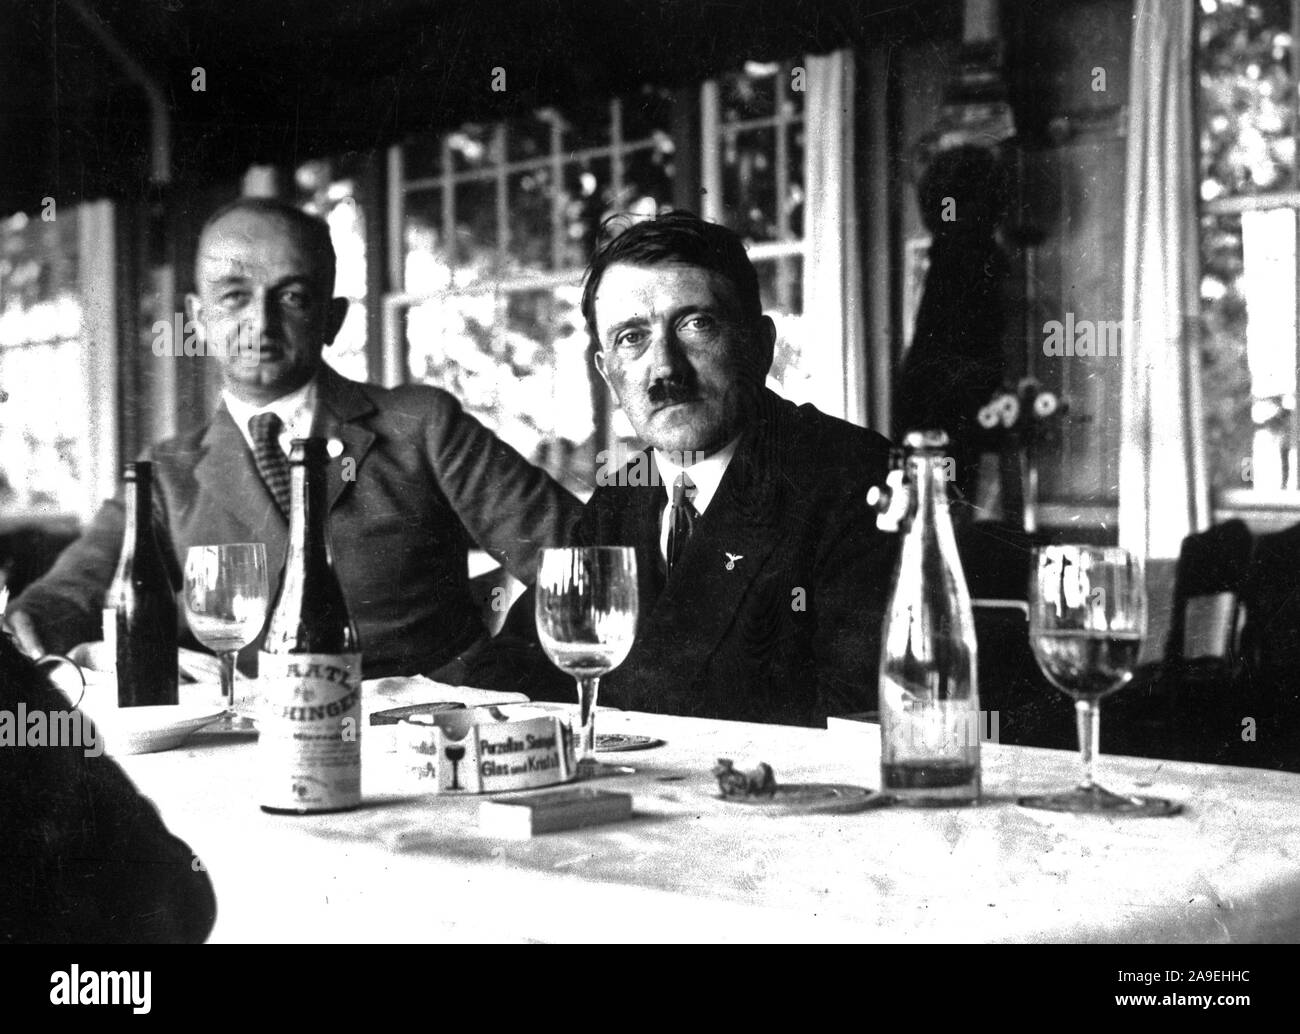 Adolf Hitler assis à table avec des bouteilles de vin sur la table Banque D'Images